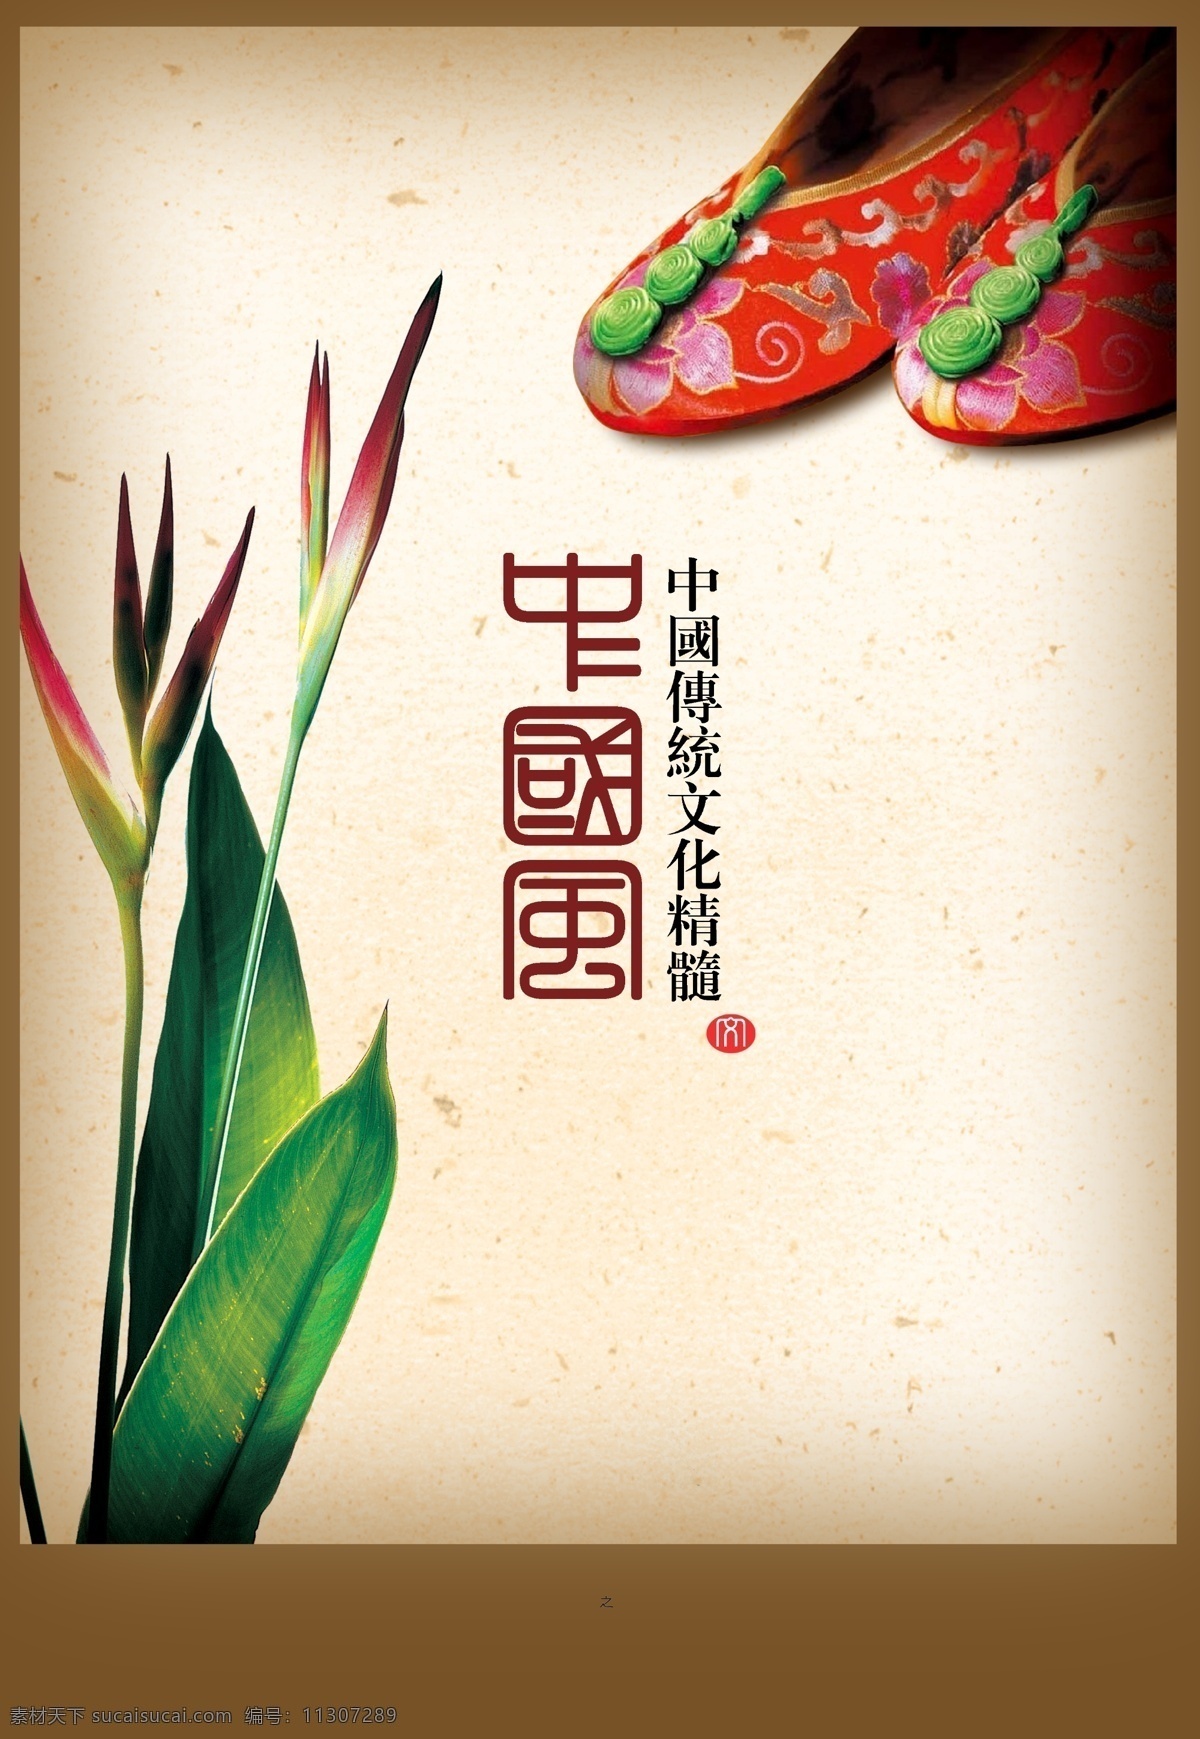 中国 传统文化 元素 背景 中国风 绣花鞋 古风 白色